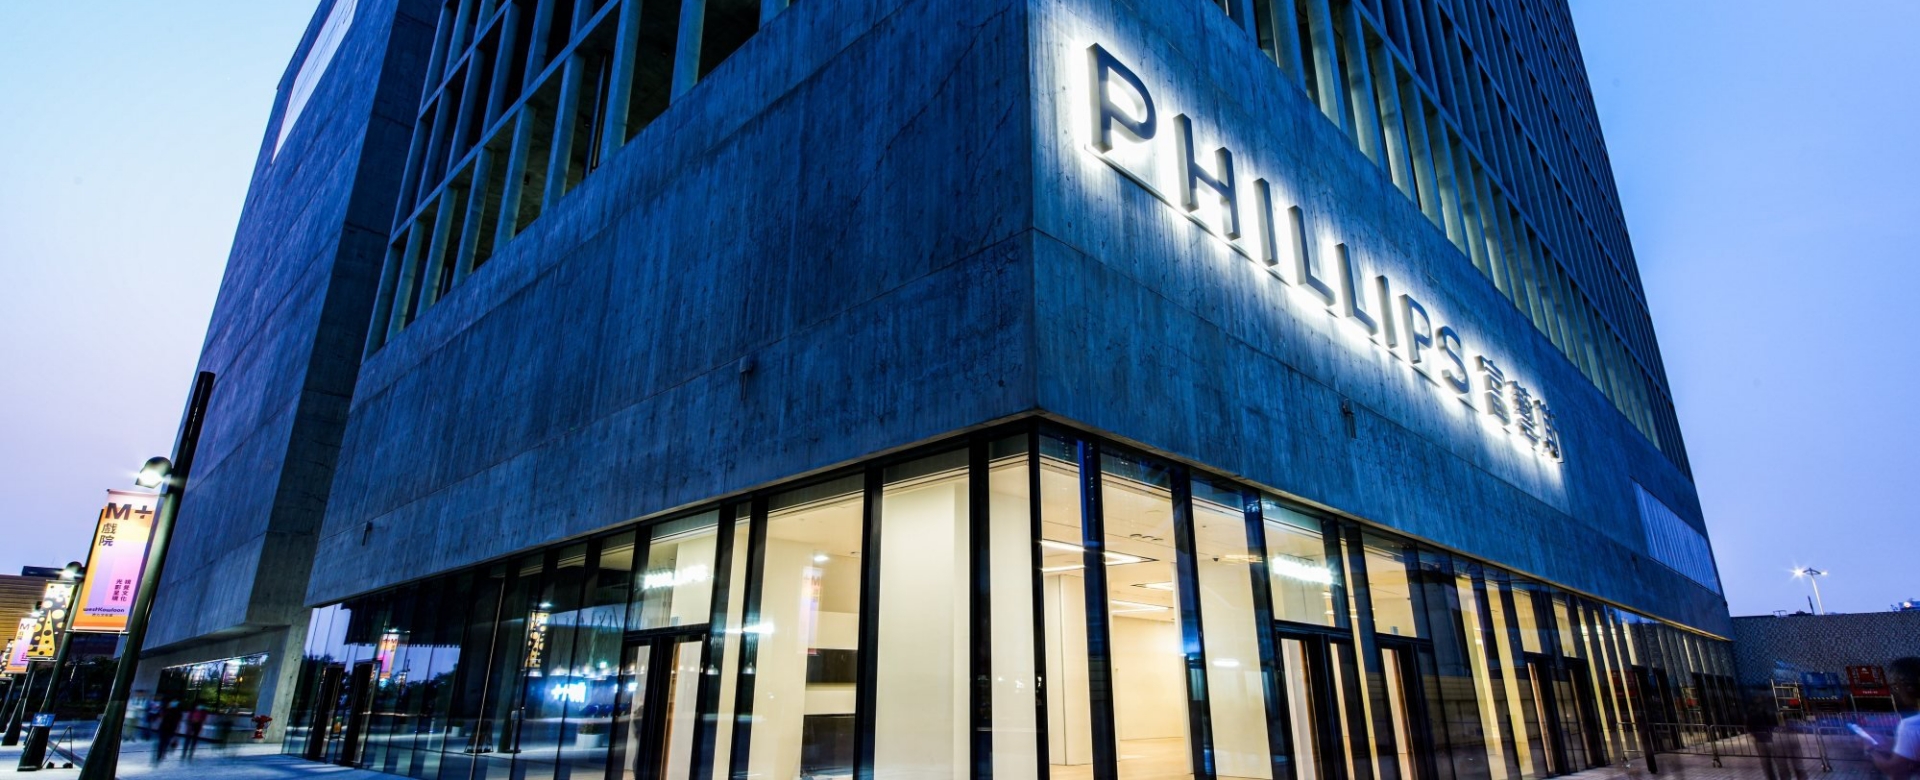 BizLab: 3 nhà đấu giá lớn nhất thế giới Christie’s, Sotheby’s và Phillips ăn nên làm ra trên toàn cầu